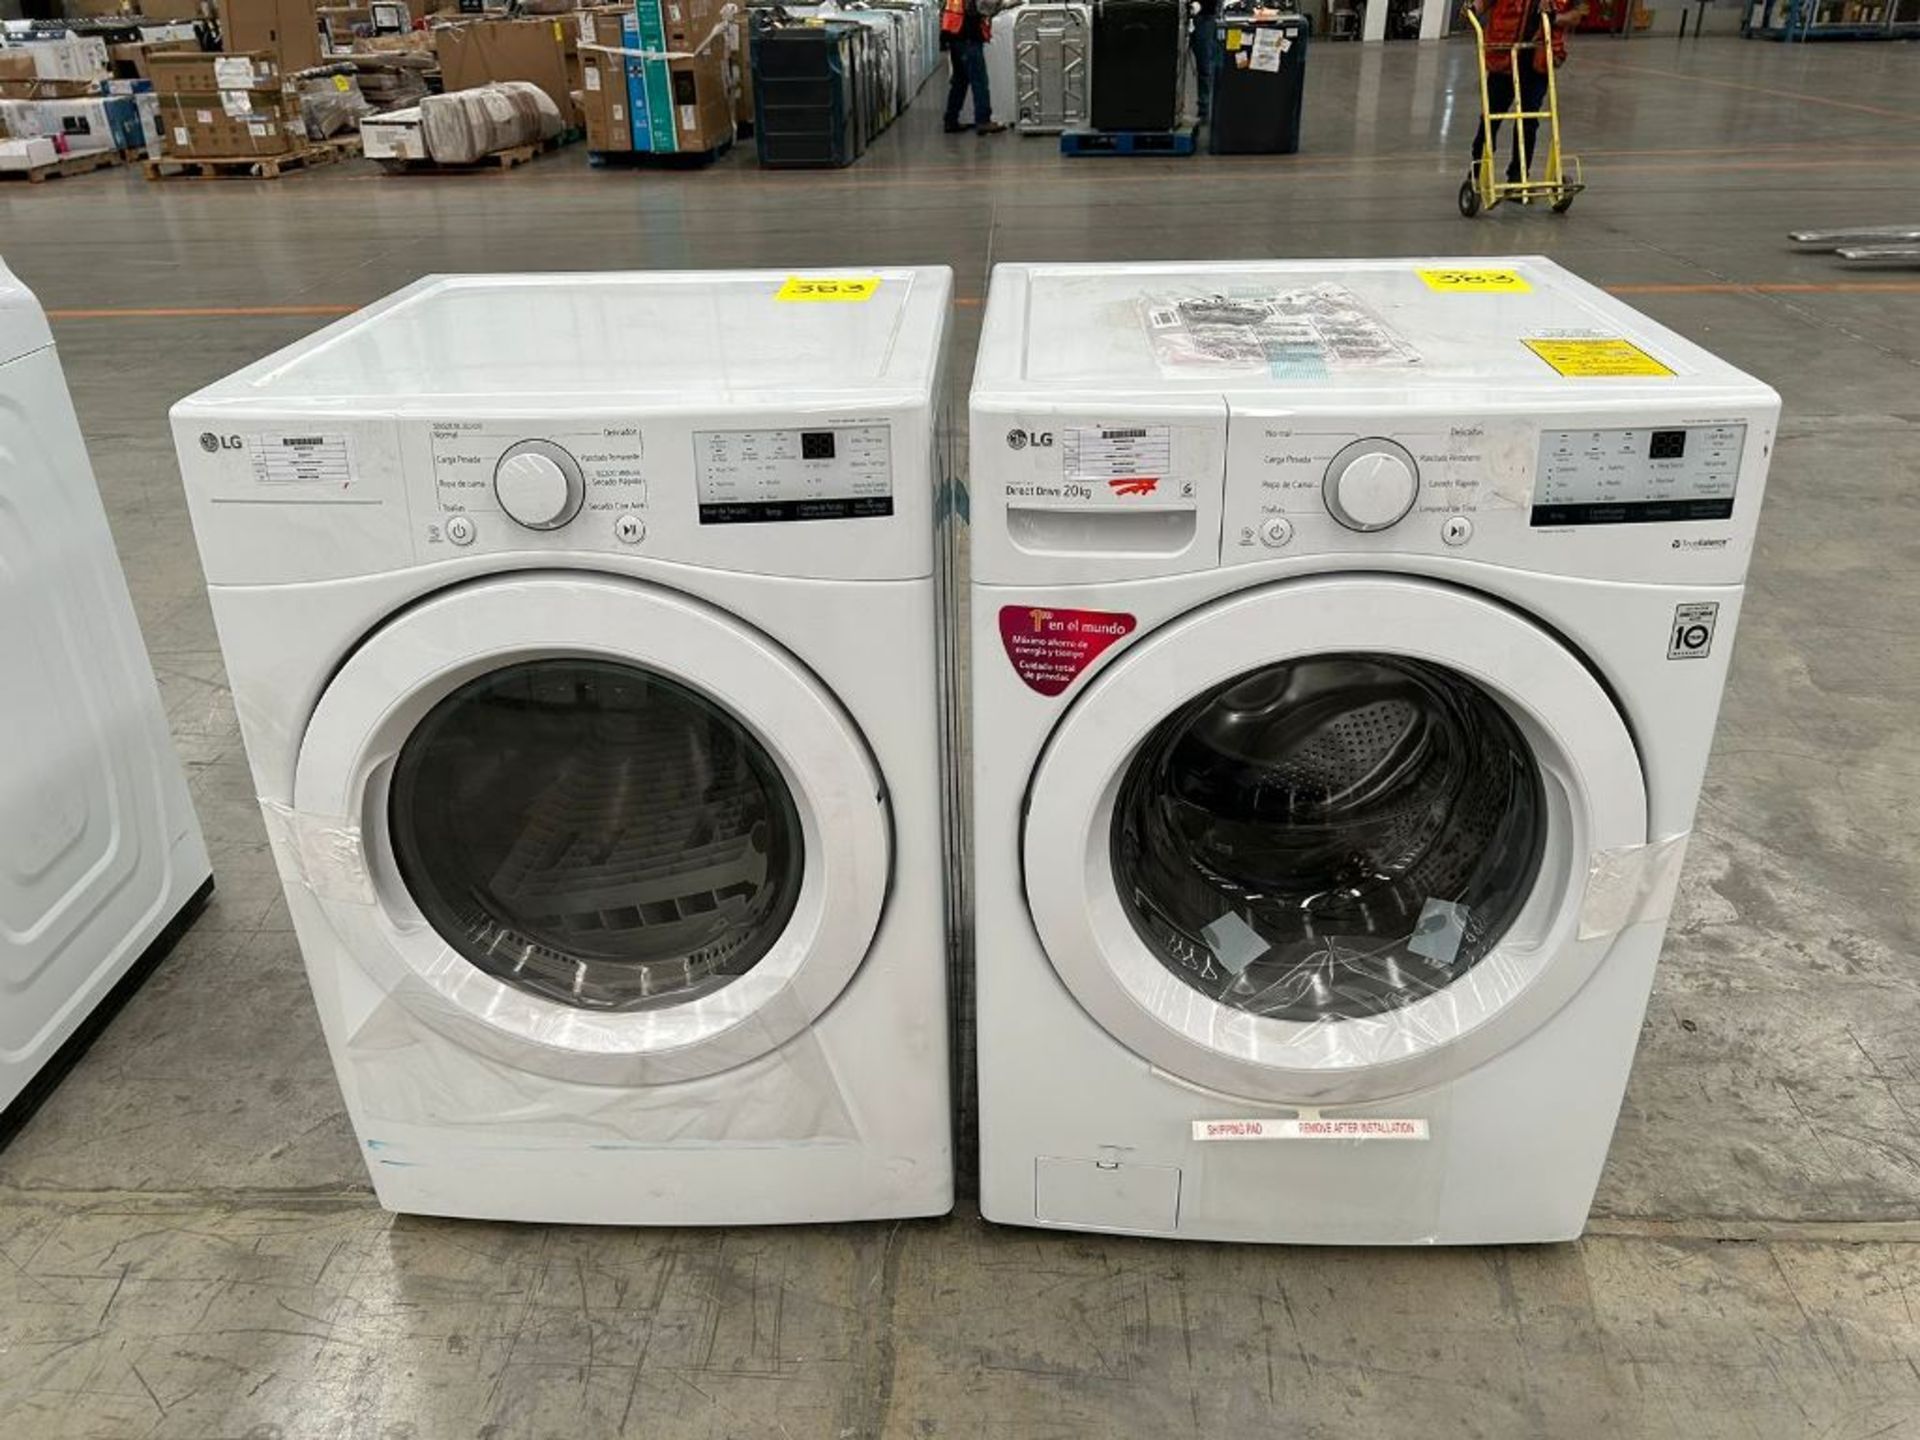 Lote de 1 Lavadora Y 1 secadora contiene: 1 lavadora de 20 Kg Marca LG, Modelo WM20WV26W, Serie k29